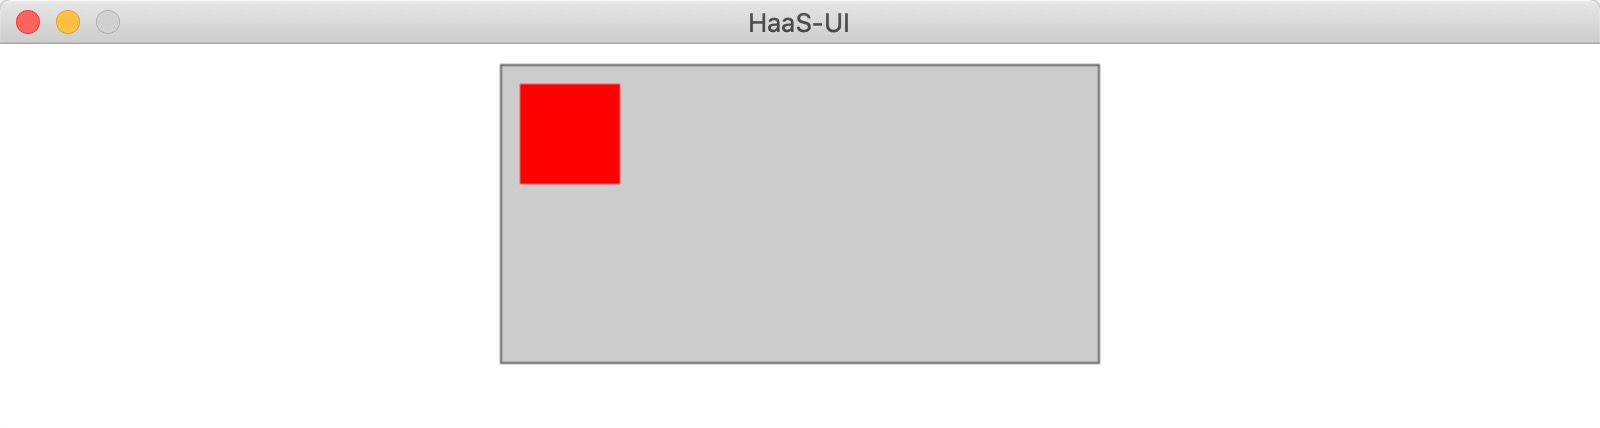 HaaS UI小程序解决方案进阶教学之一：Canvas画图入门